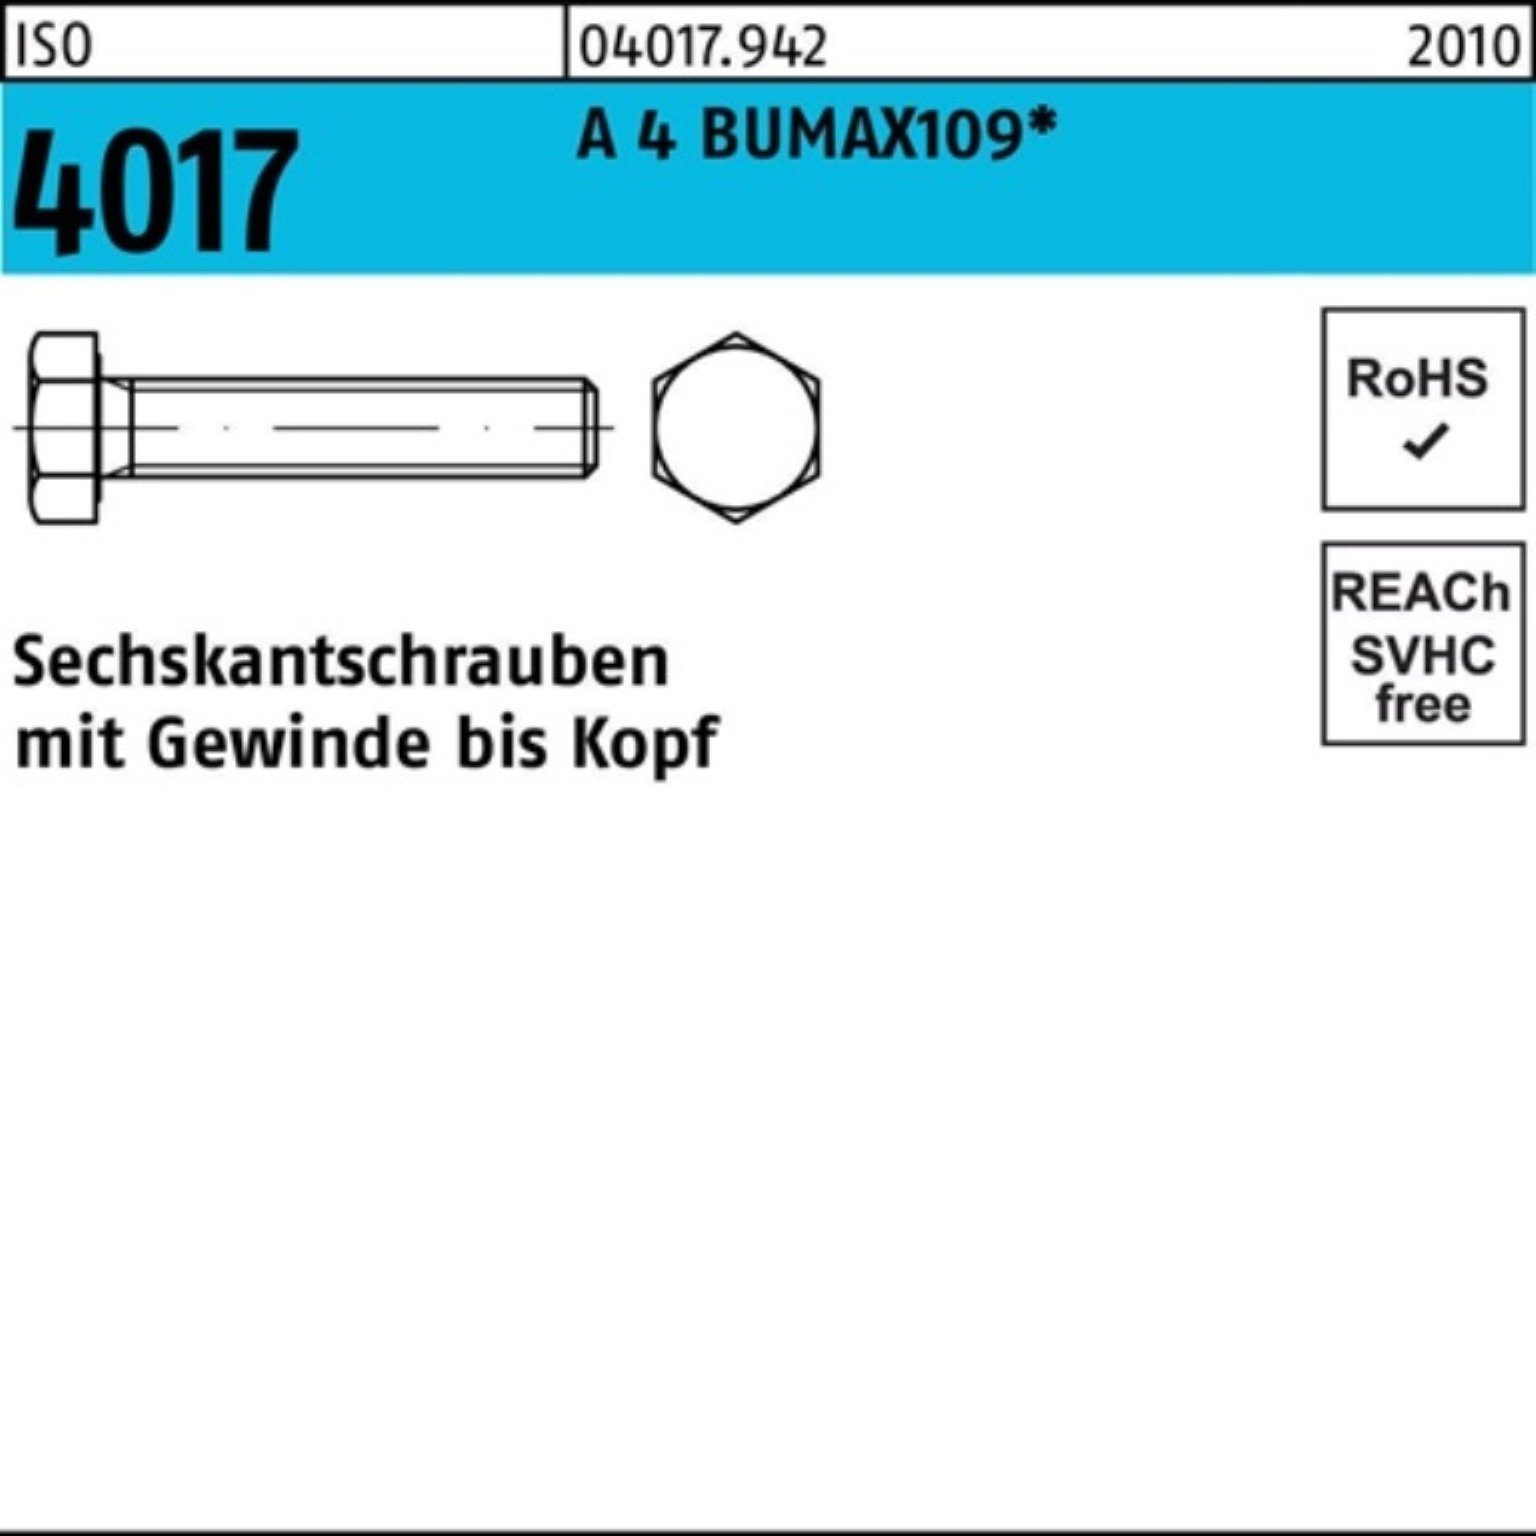 Sechskantschraube Stück BUMAX109 Bufab Sechskantschraube A 4017 M8x VG 100er ISO Pack 4 50 40